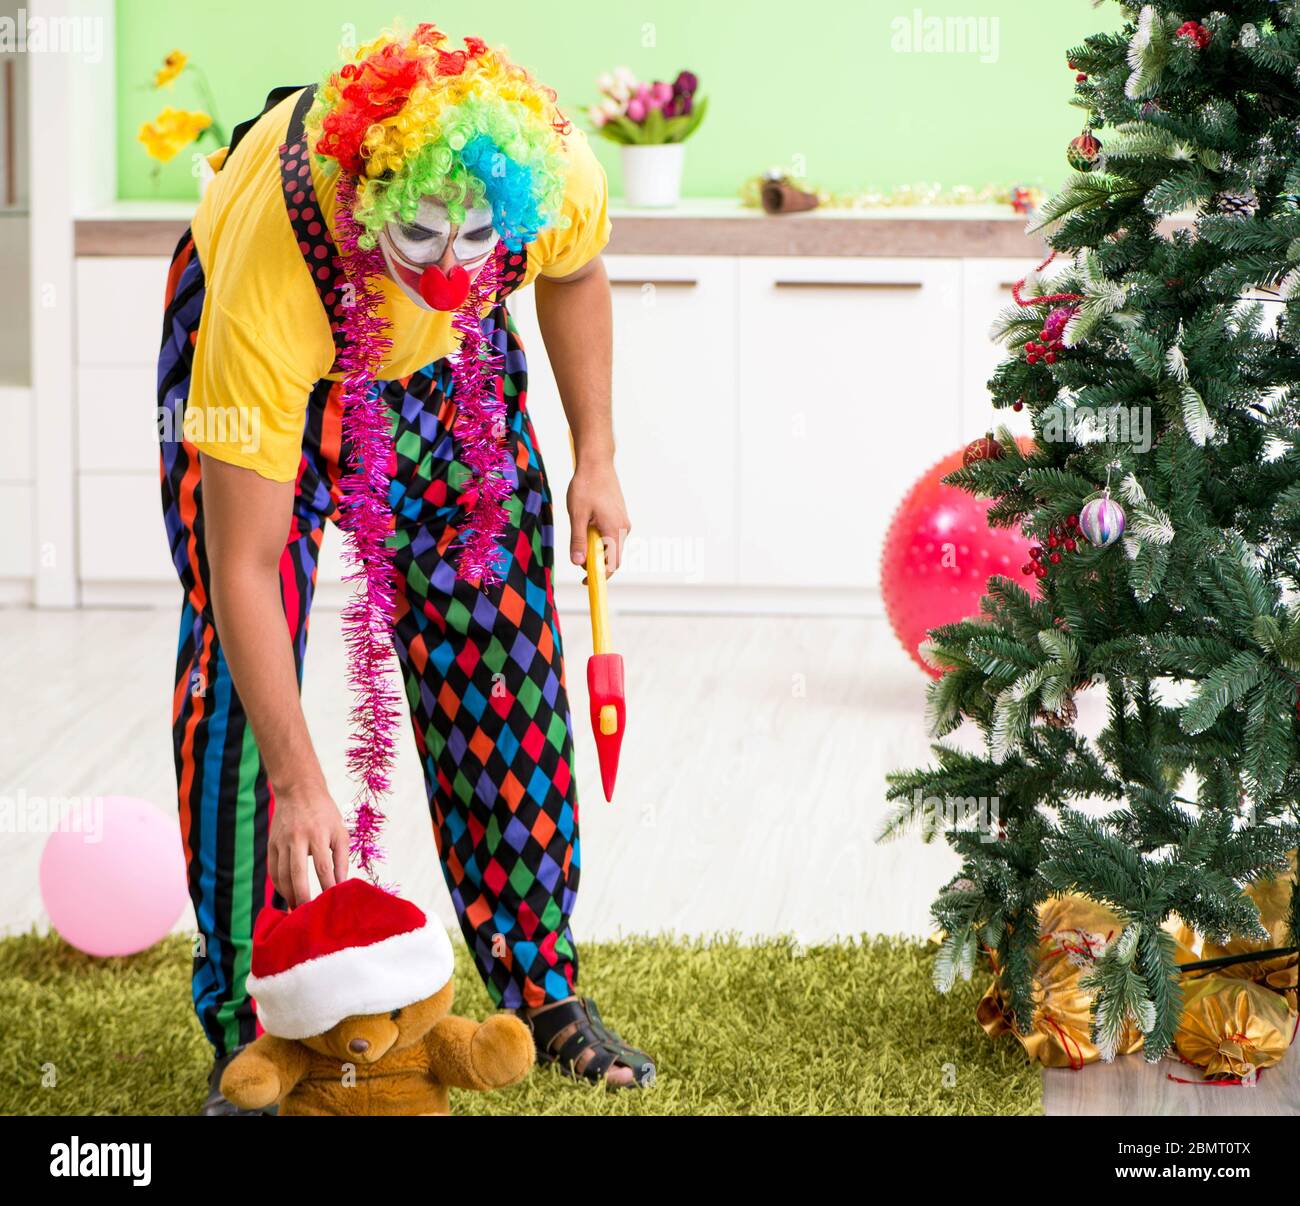 Der Lustige Clown In Weihnachtsfeier Konzept Stockfotografie Alamy